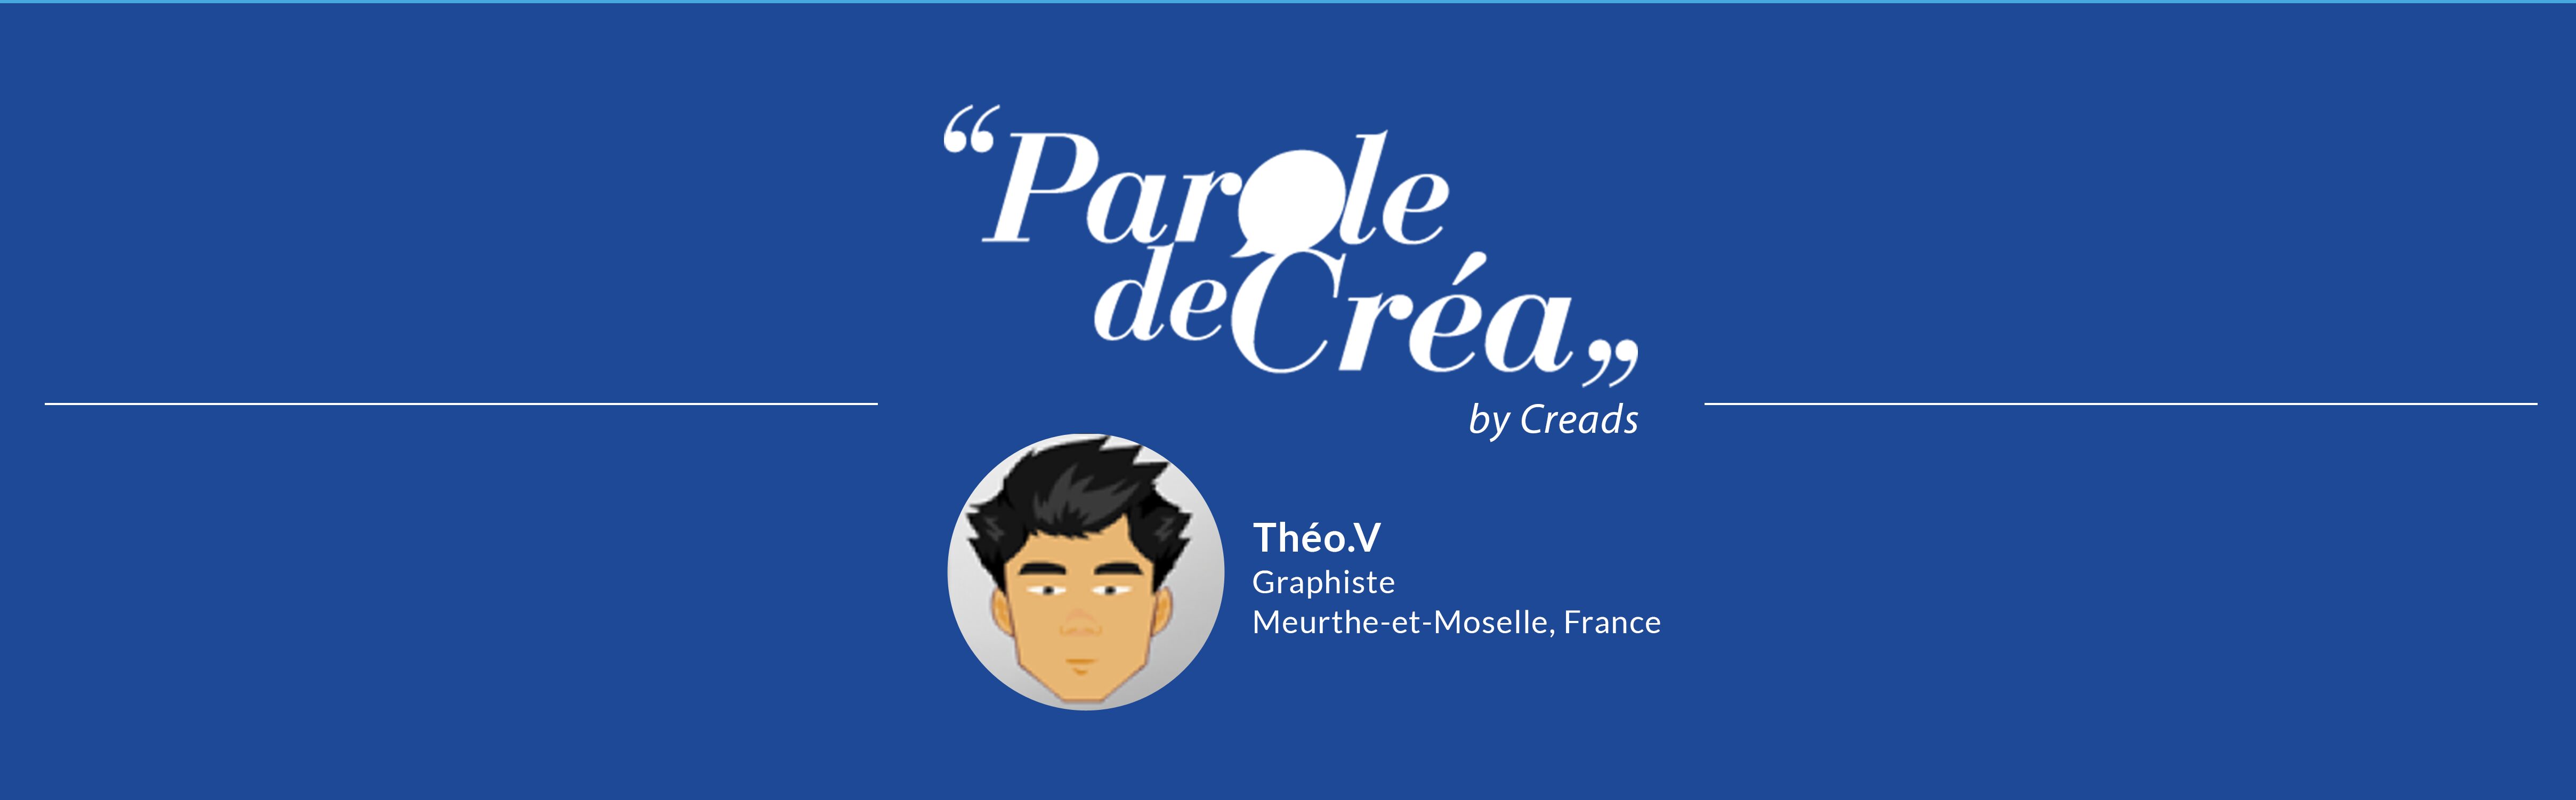 Theo.V graphiste freelance France